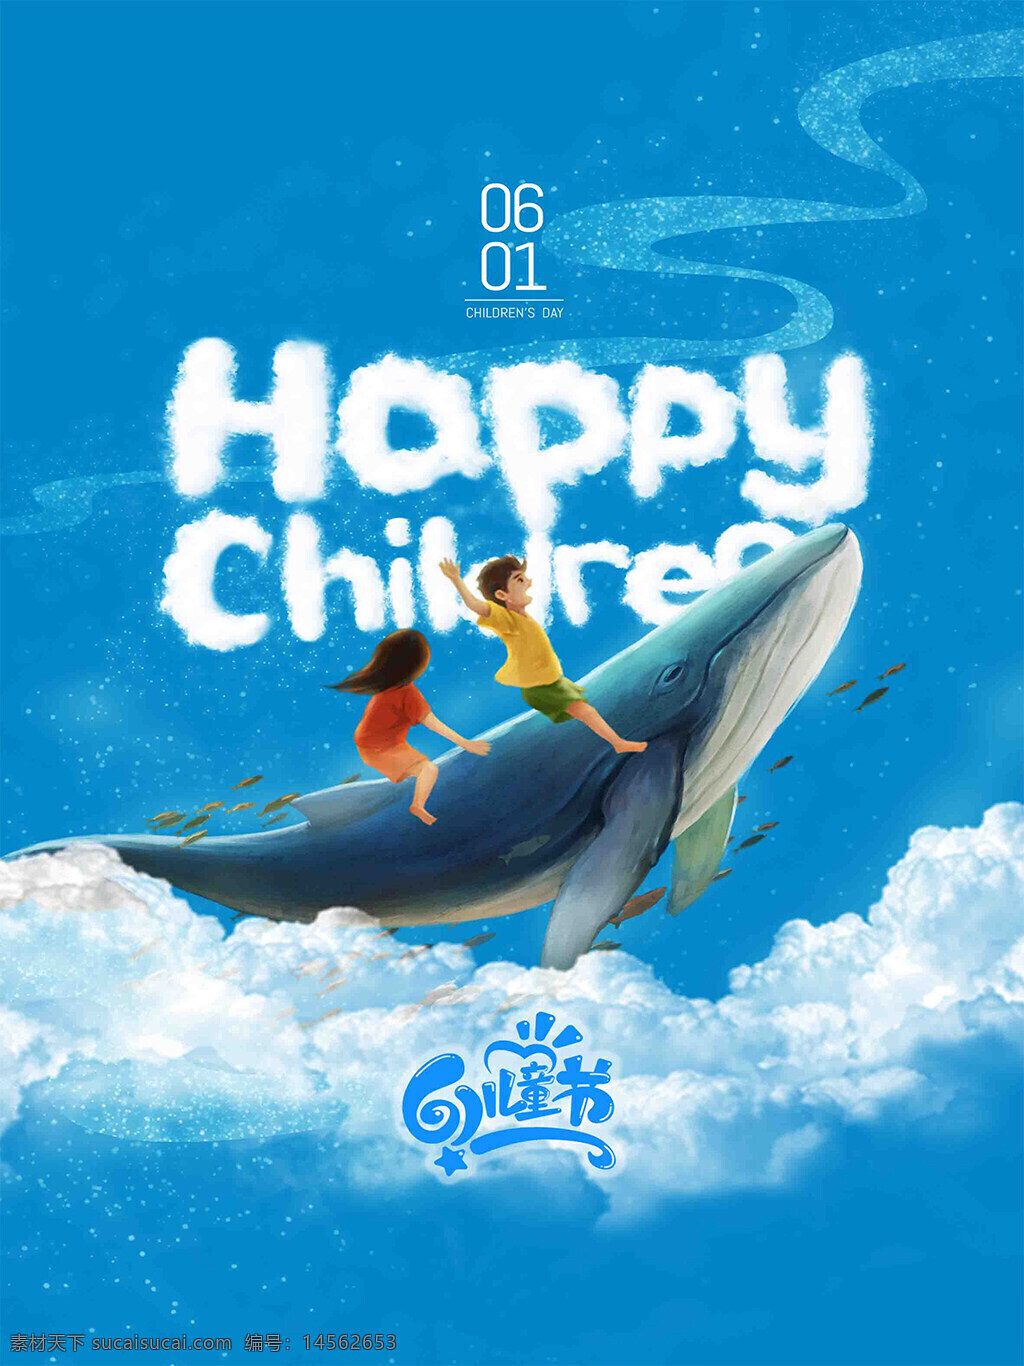 蓝天白云 happy children 6.1 儿童节 小孩 男孩 女孩 鲸鱼